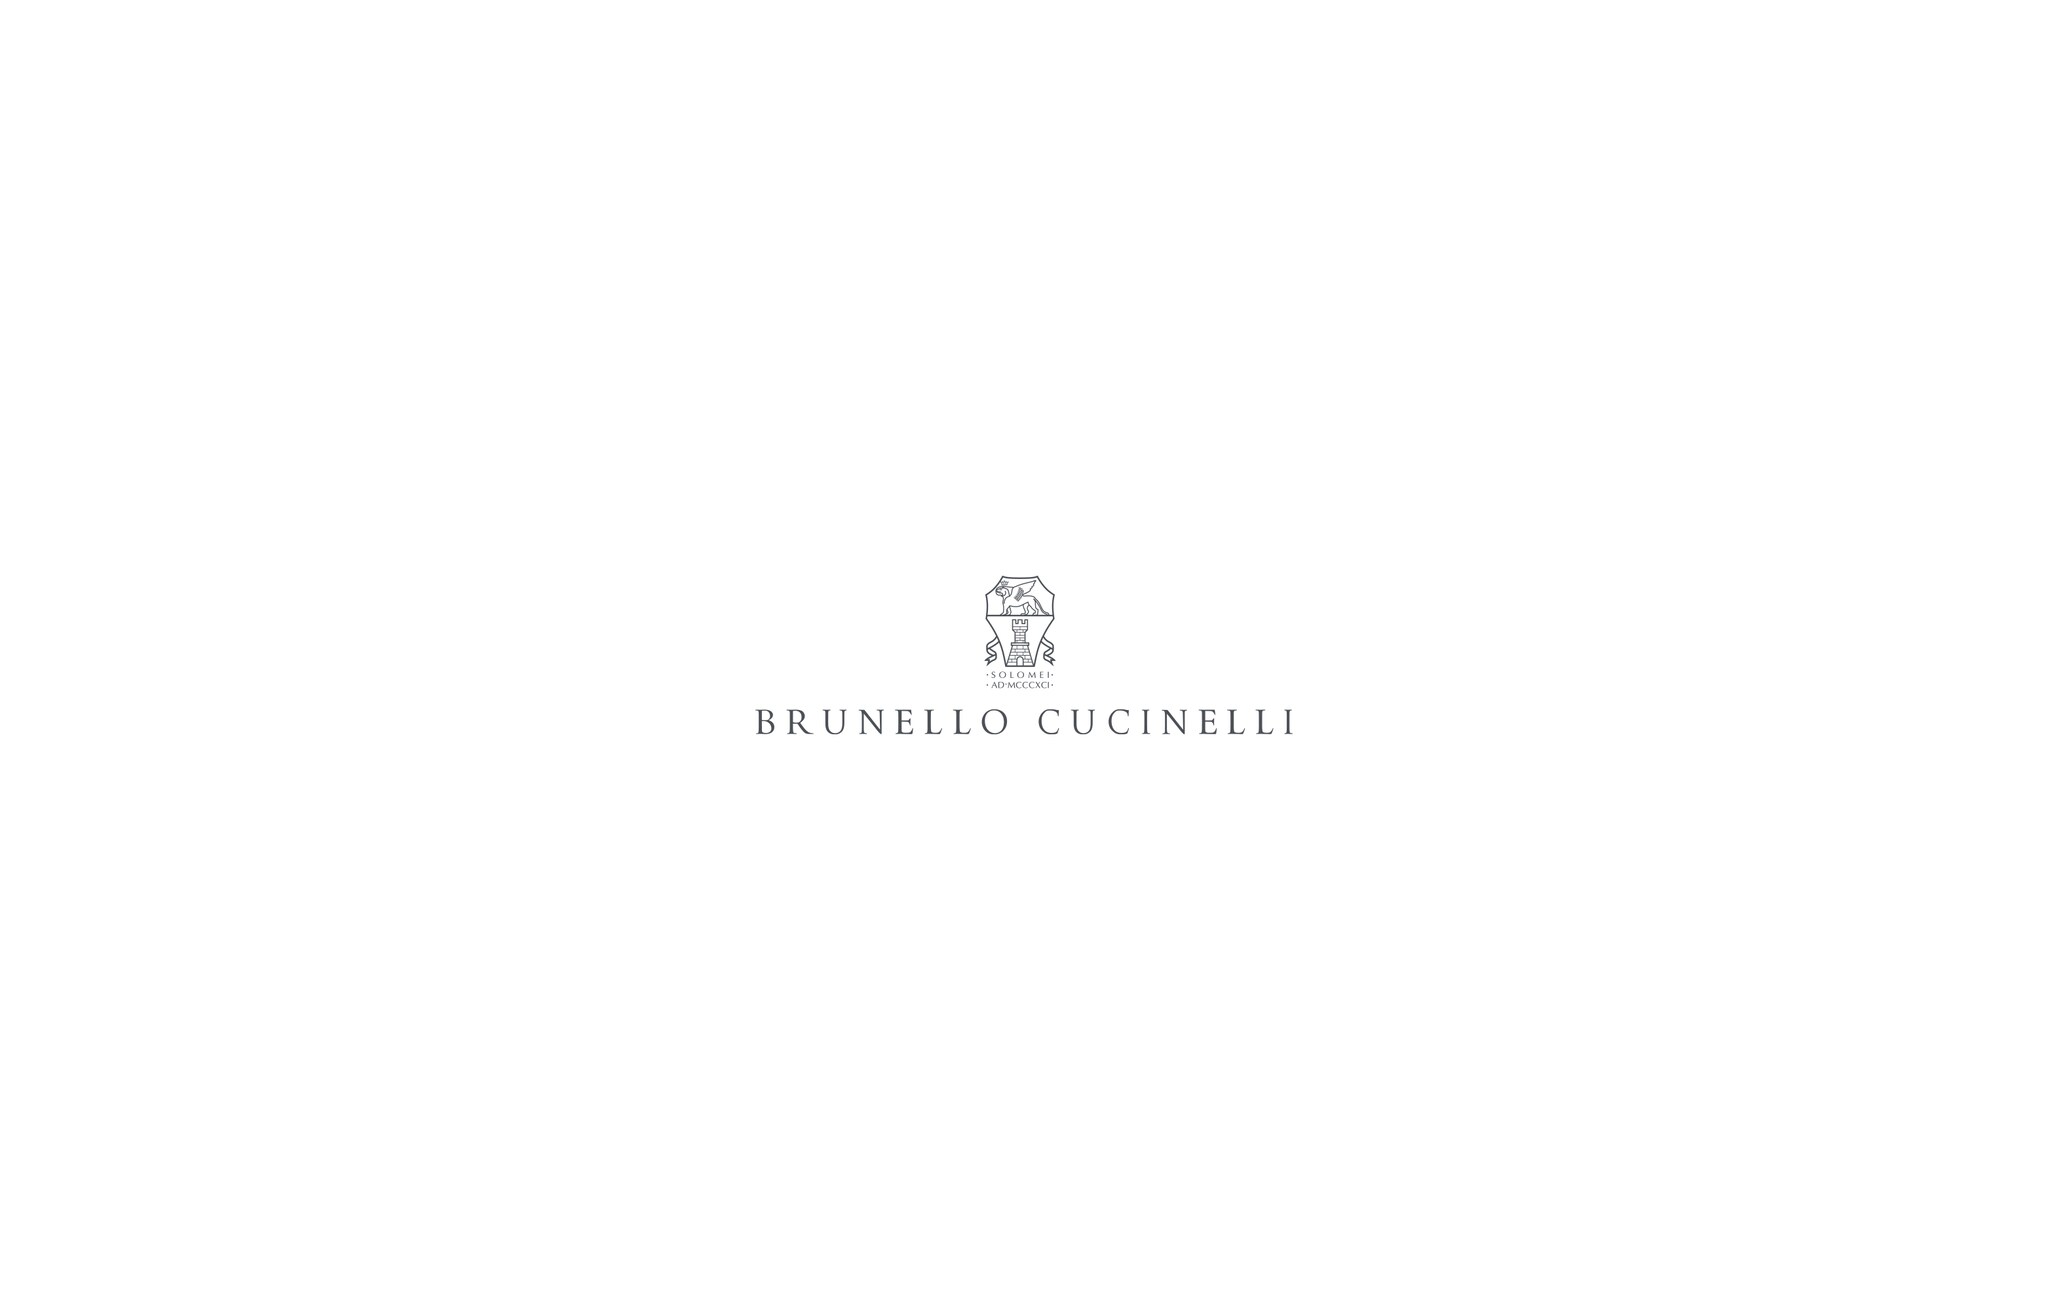  镶珠装饰的无袖上衣 天蓝色 女款 - Brunello Cucinelli 